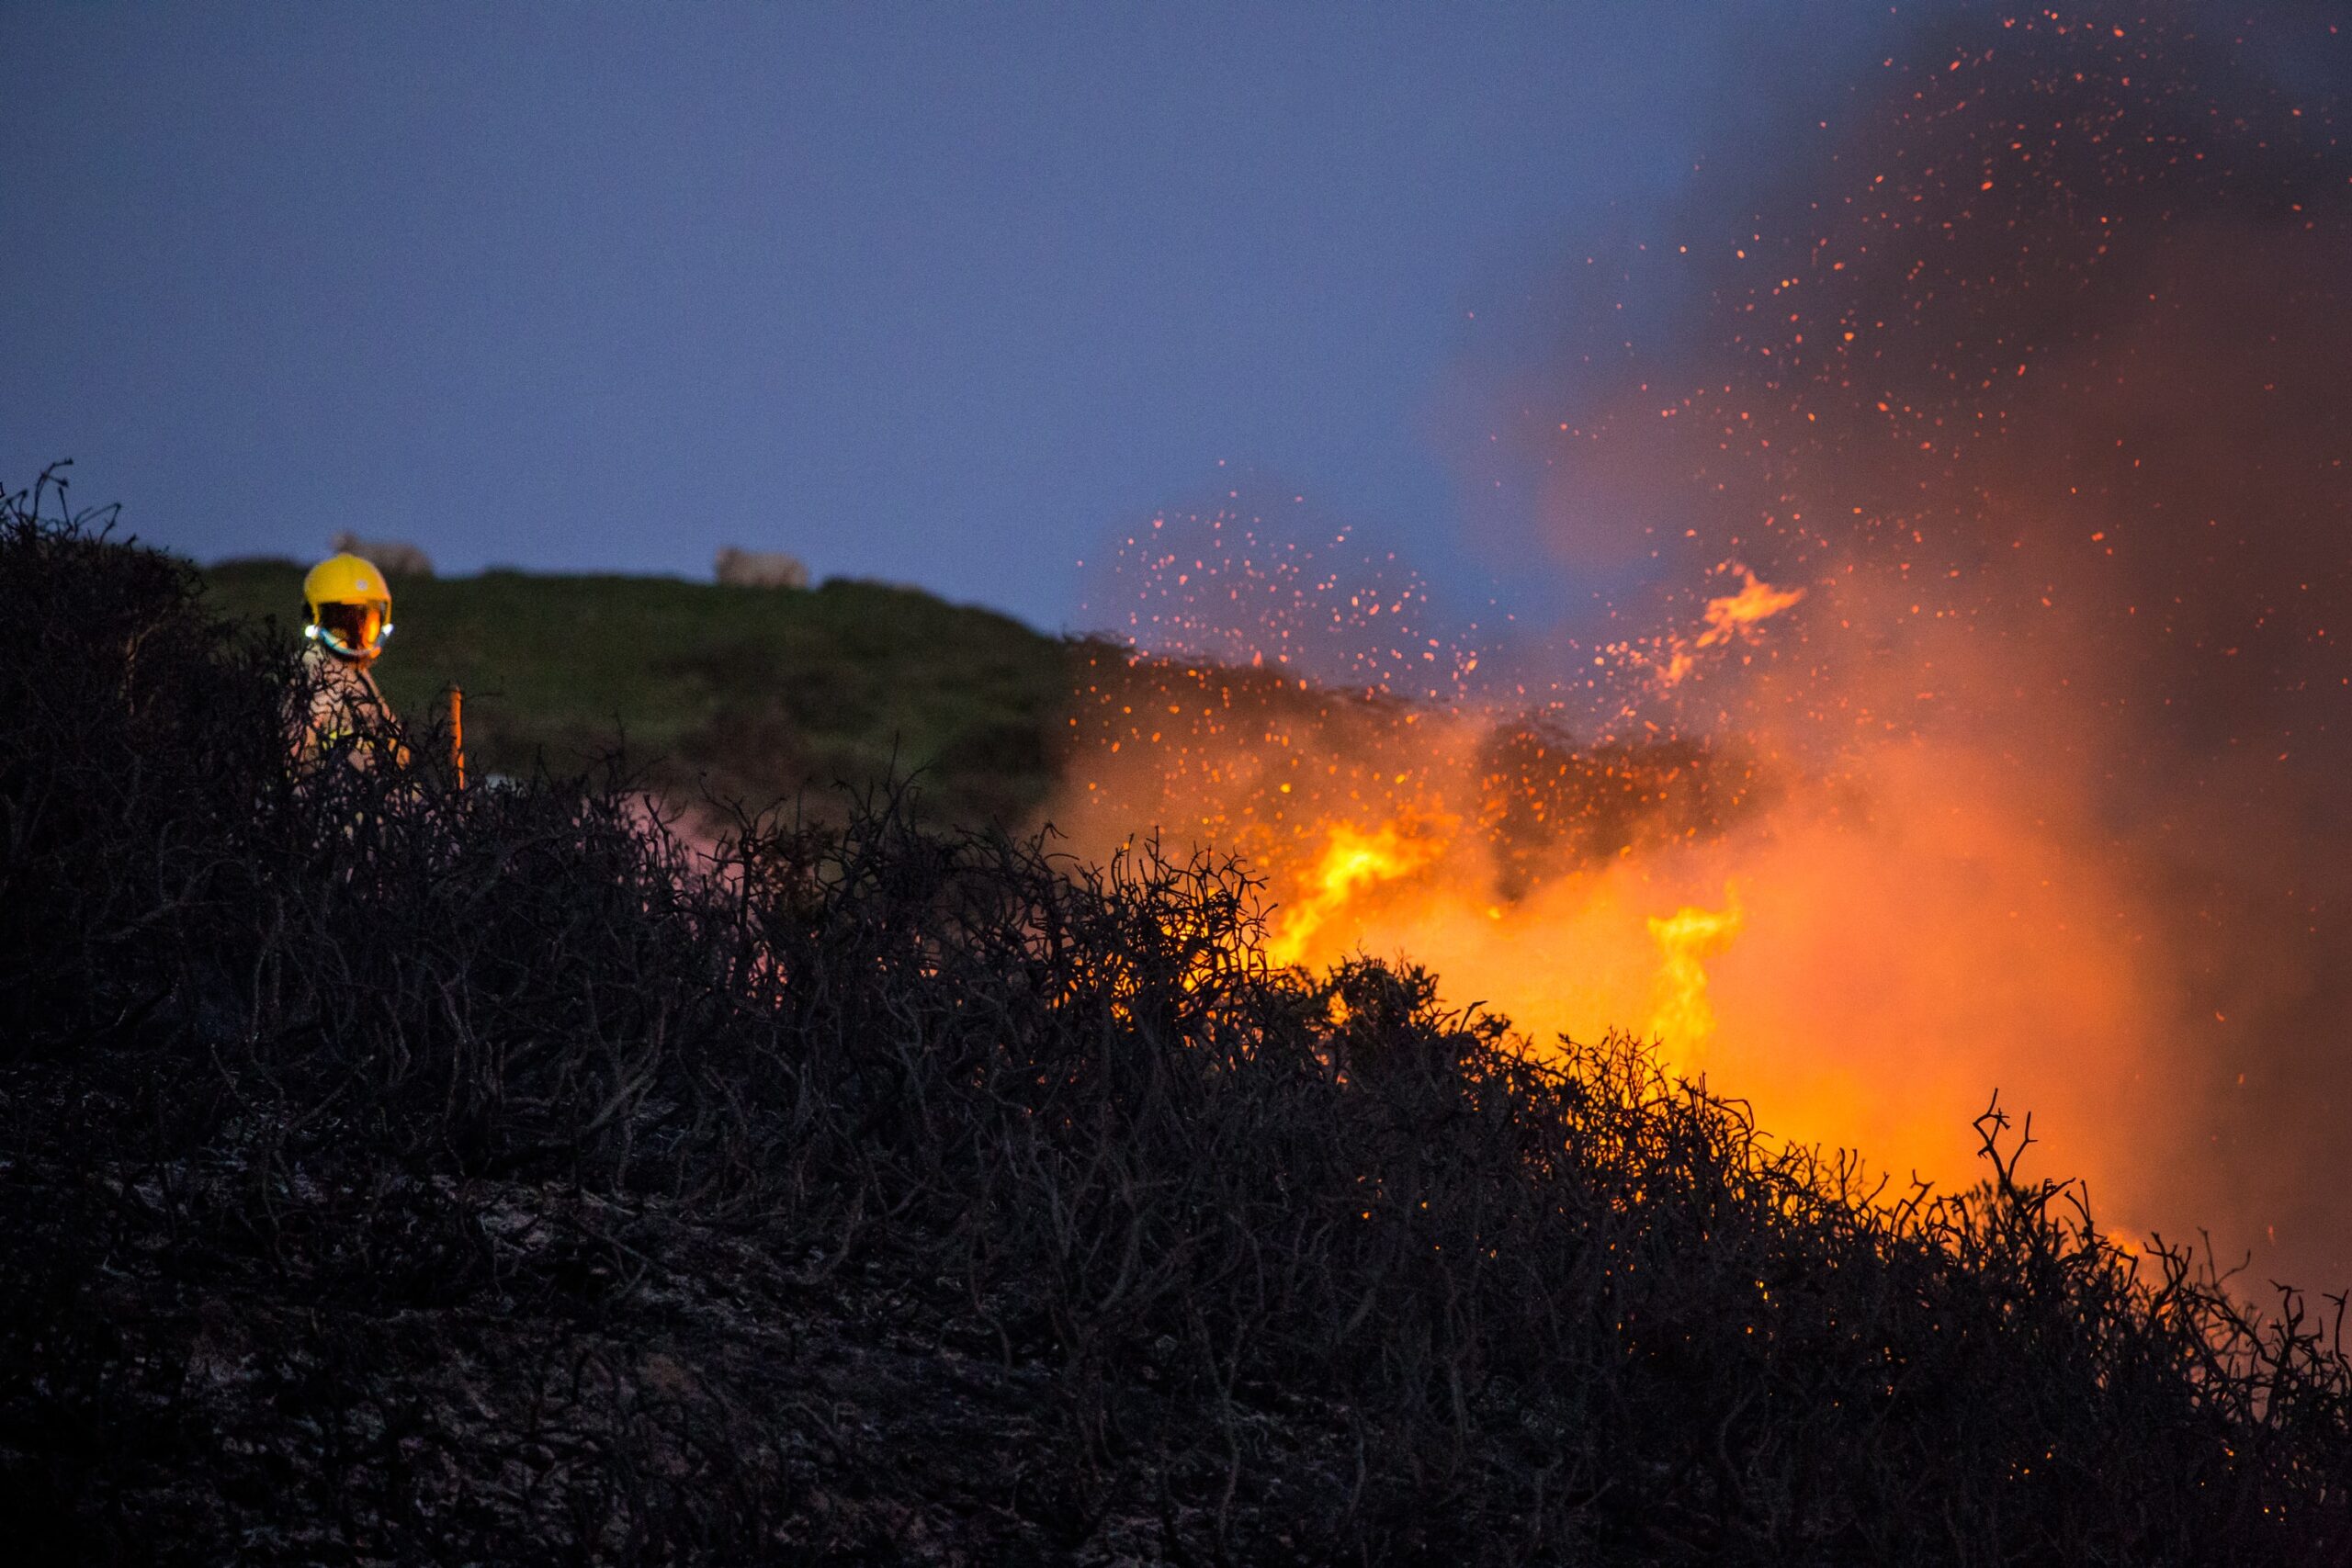 Bushy terrain catching fire